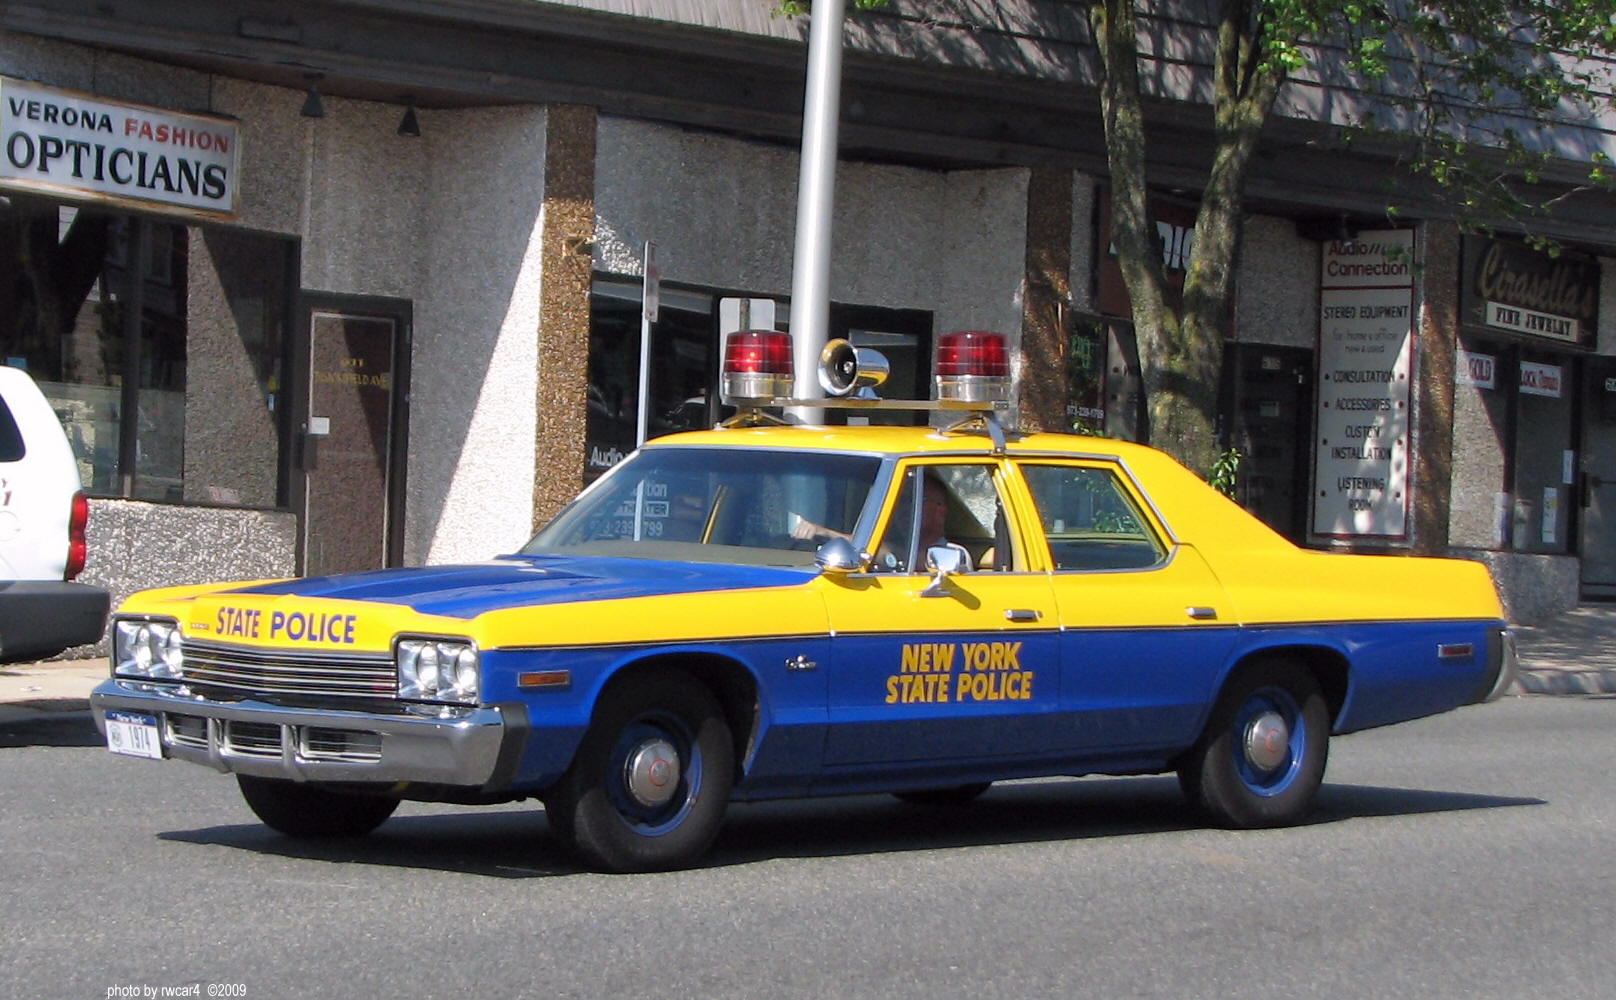 Dodge Monaco 1974 New York State Police